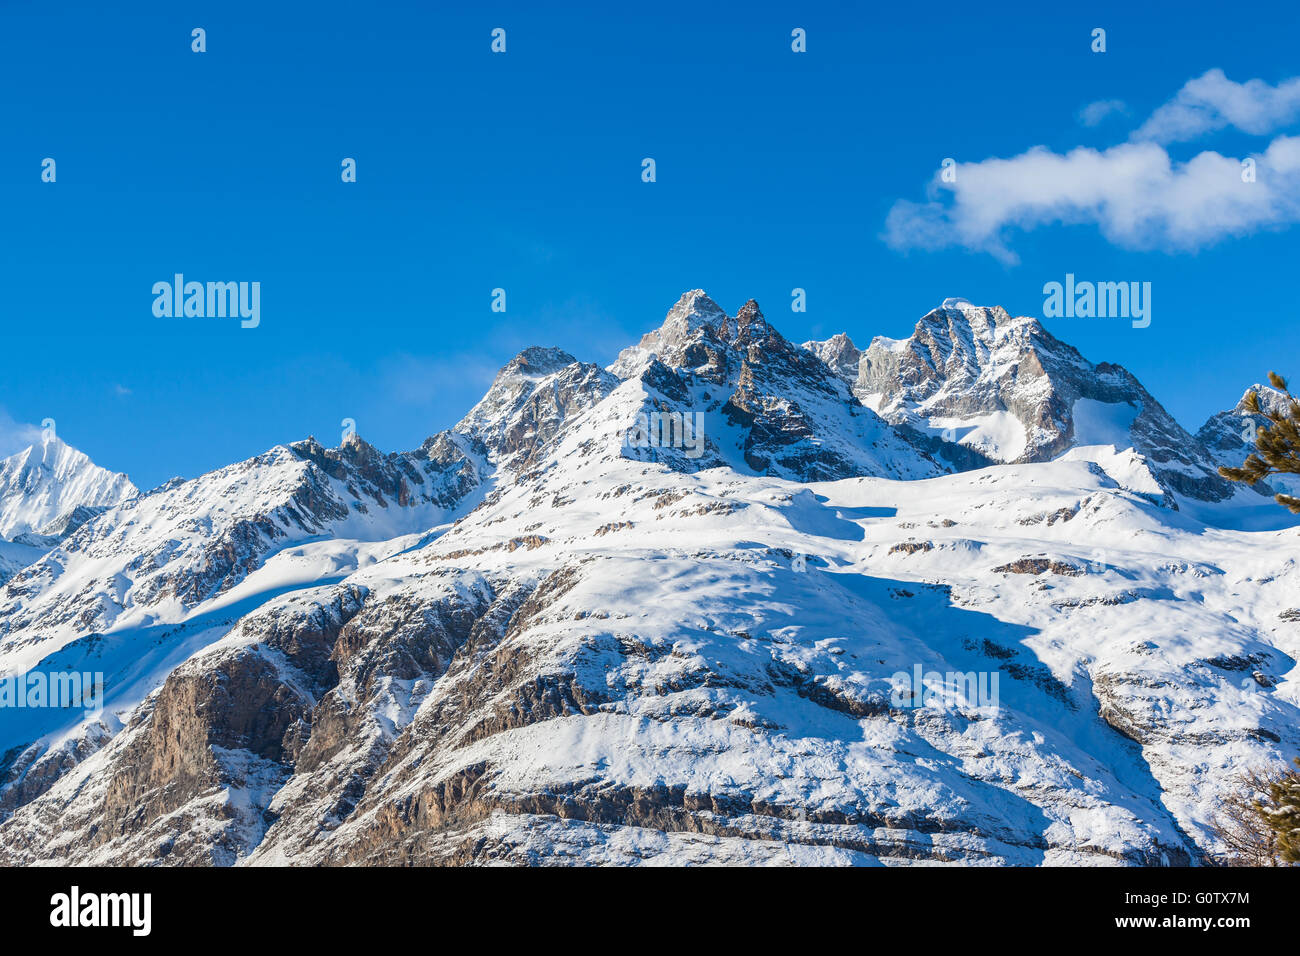 Panorama vue des Alpes de Suisse Italien frontière près de Matterhorn, Zermatt, Weisshorn, Canton du Valais, Suisse. Banque D'Images